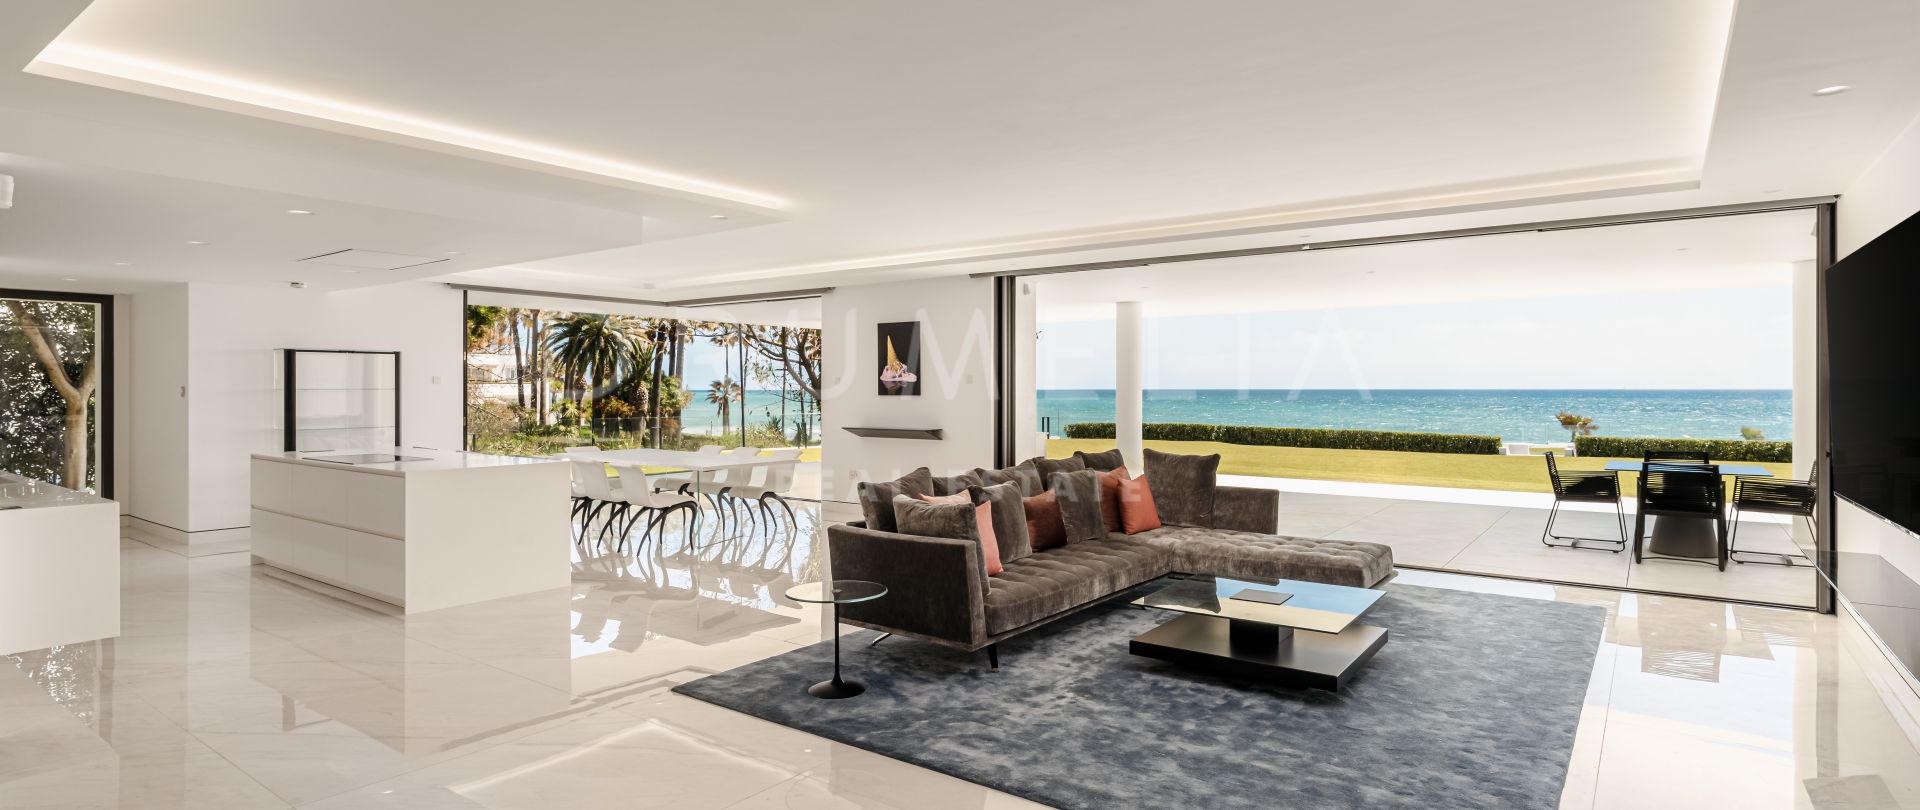 Emare Pearl - Neue herausragende moderne Luxuswohnung direkt am Meer, Emare, Estepona